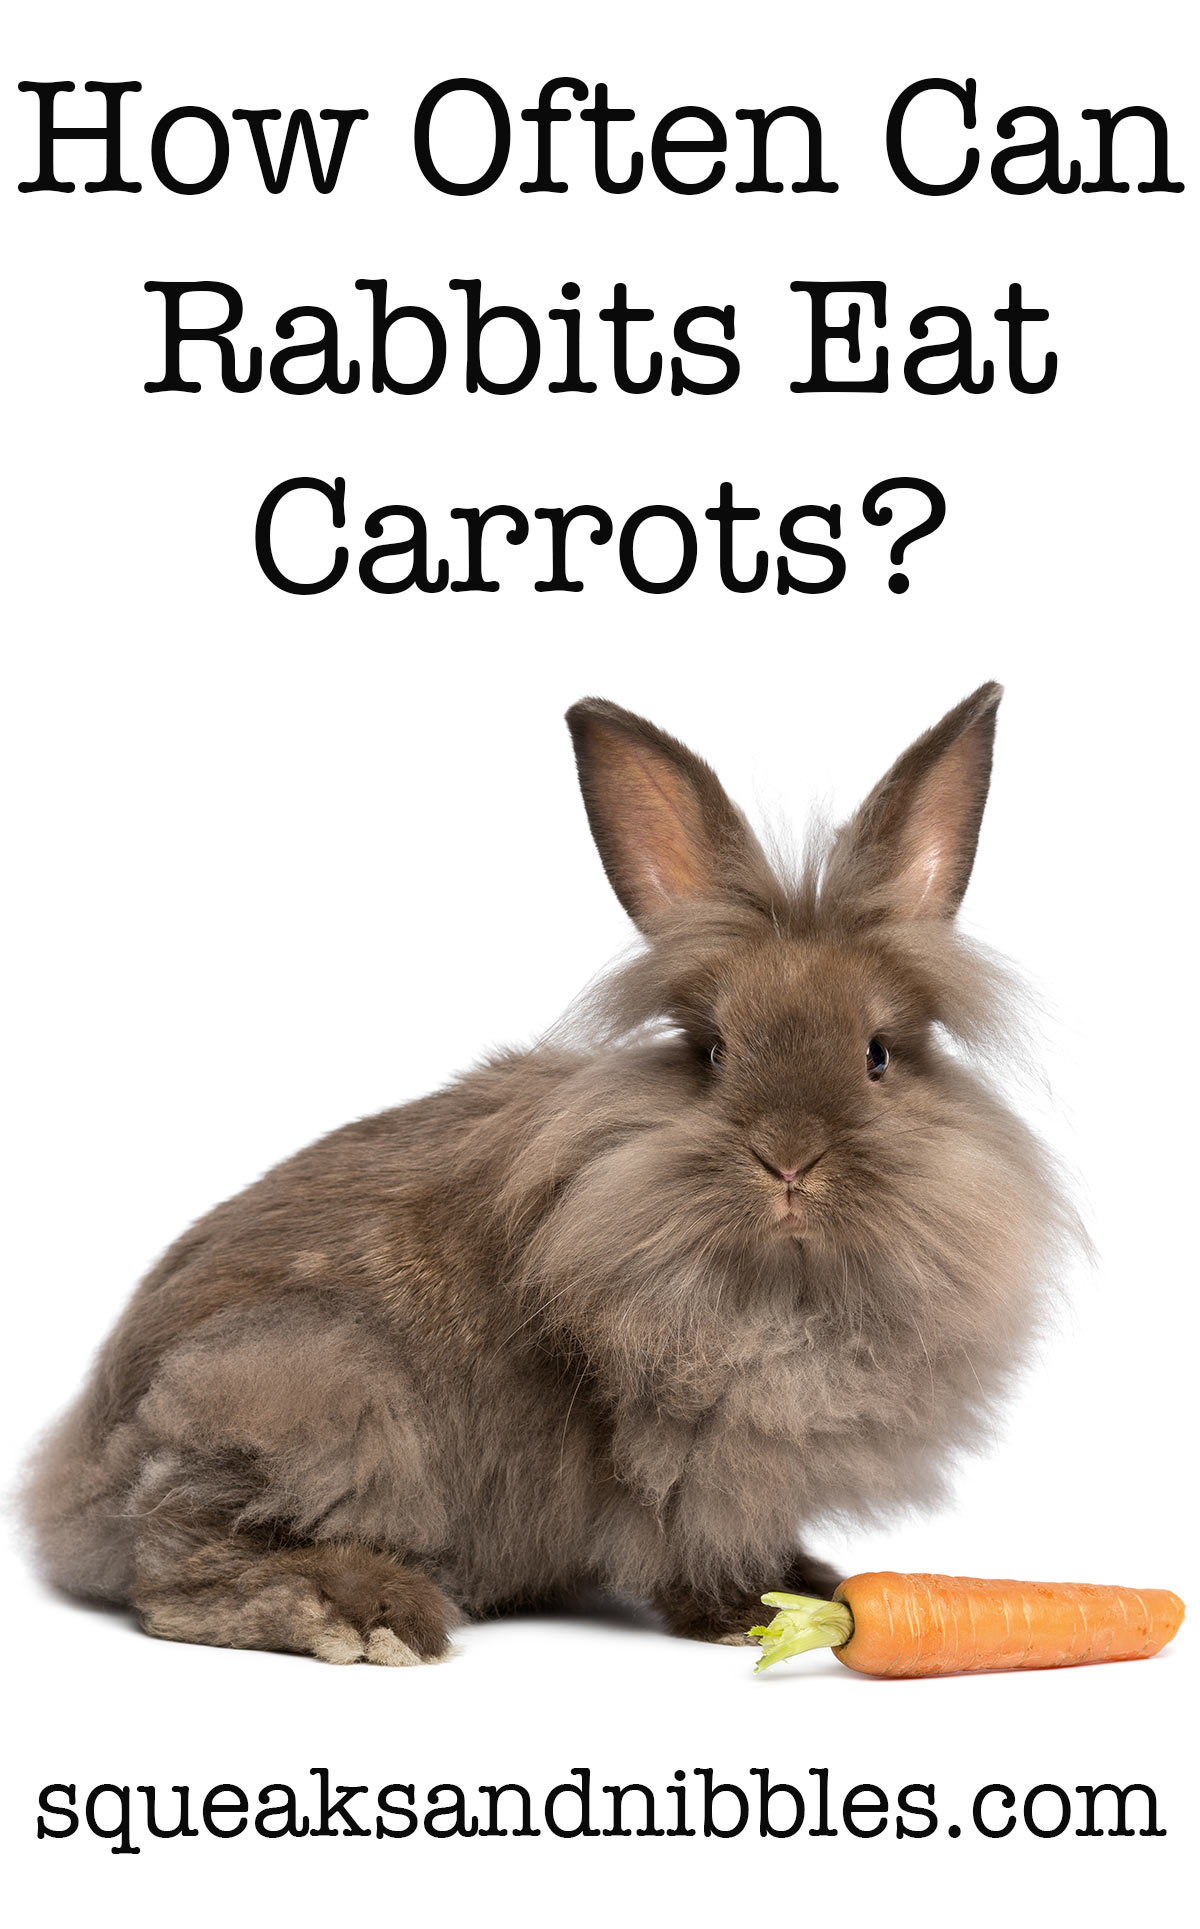 can rabbits eat carrots